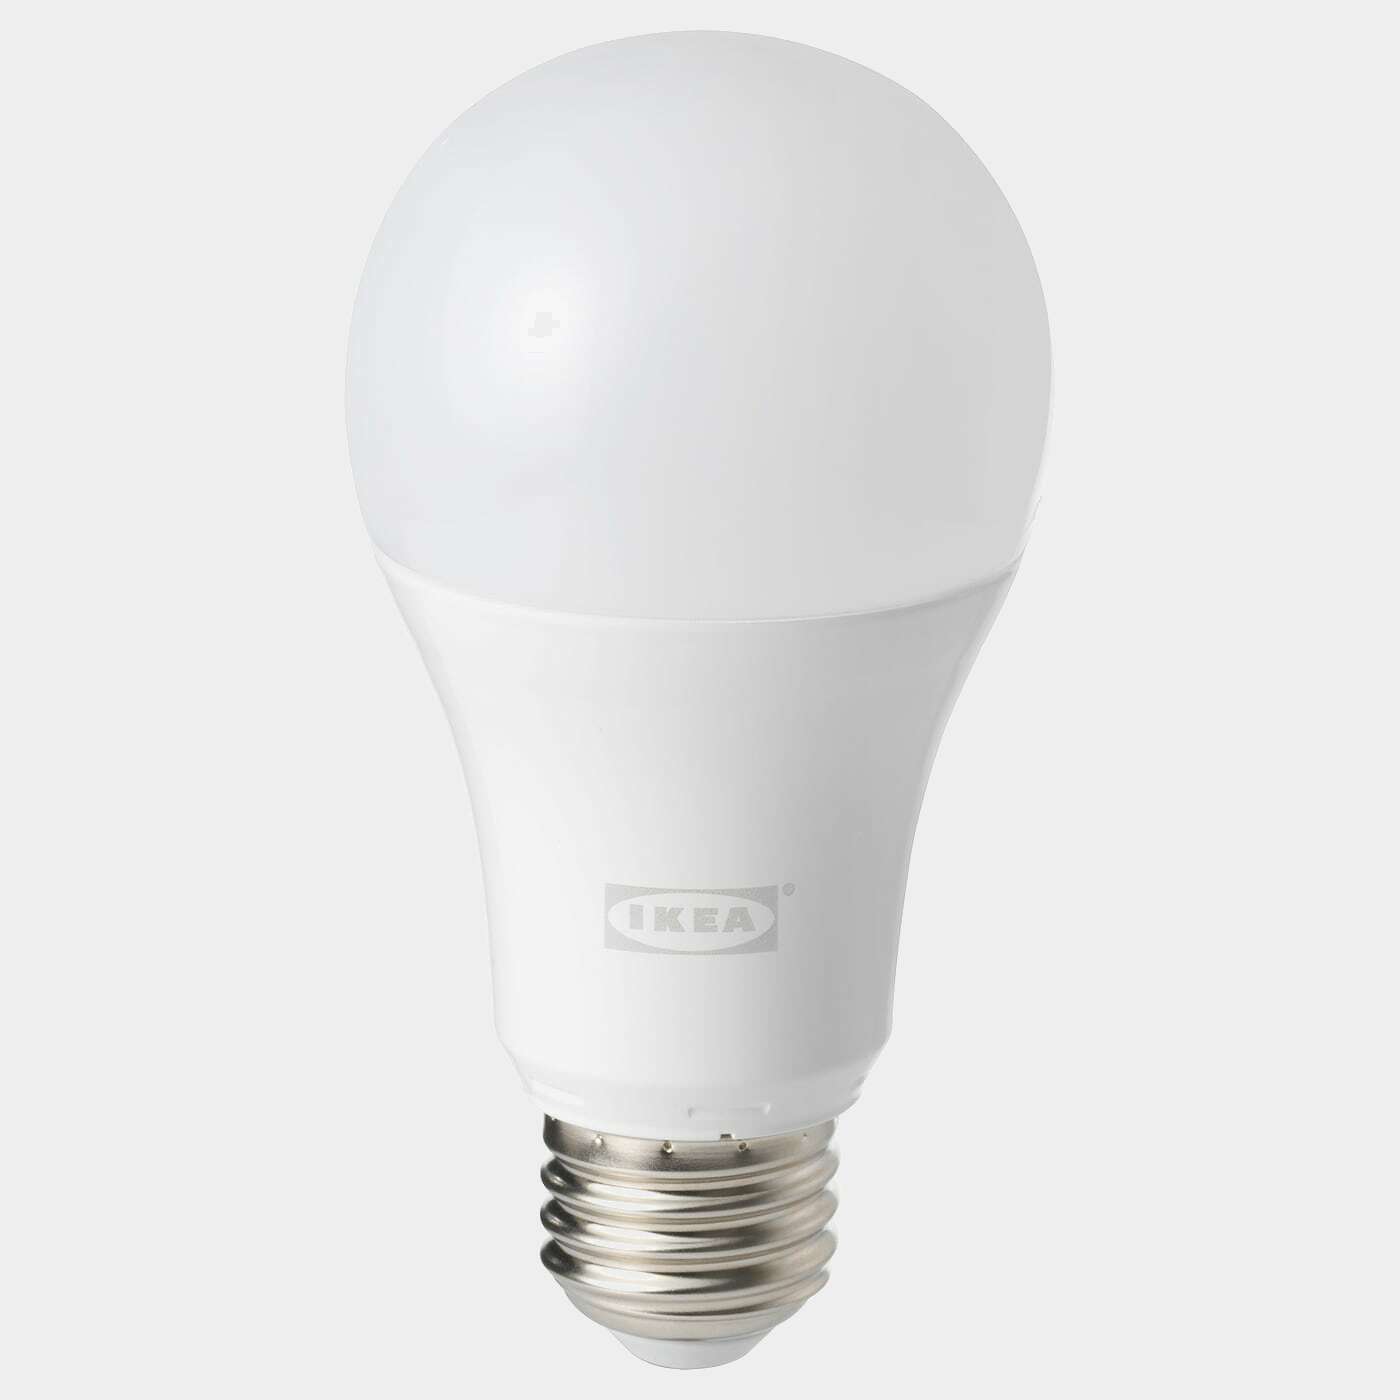 TRÅDFRI LED-Leuchtmittel E27 1000 lm  -  - Beleuchtung Ideen für dein Zuhause von Home Trends. Beleuchtung Trends von Social Media Influencer für dein Skandi Zuhause.